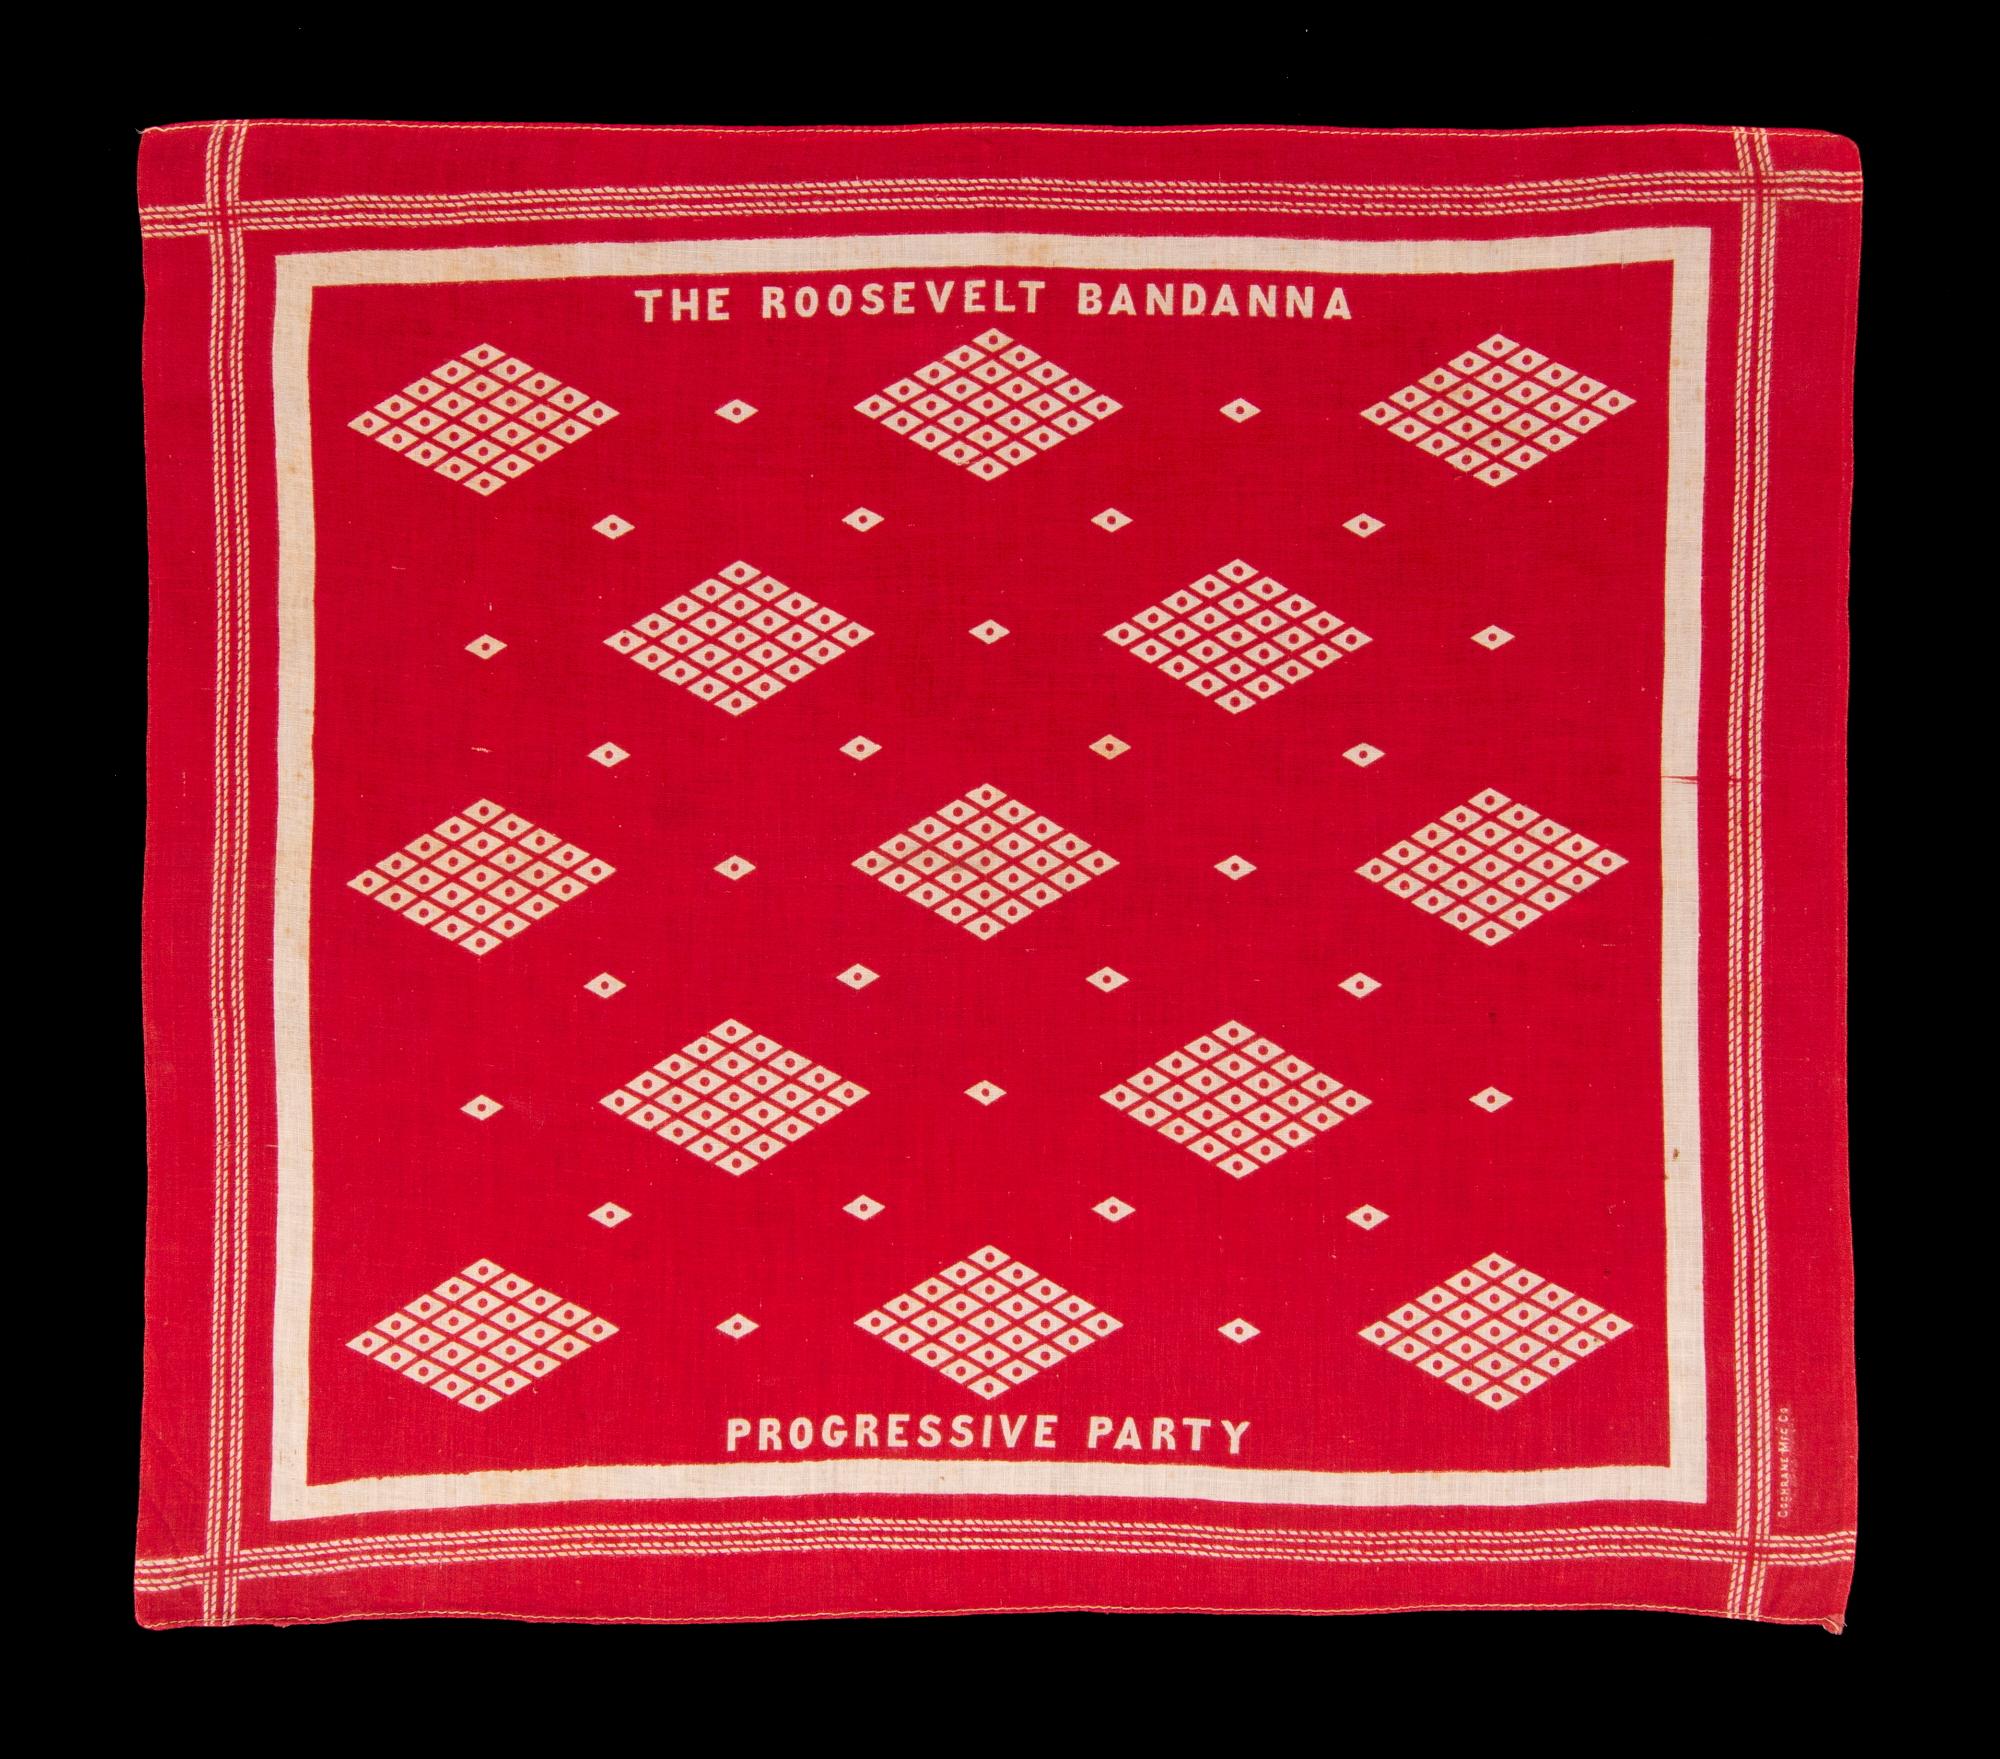 Truthahnrotes Kopftuch, hergestellt für die Präsidentschaftskampagne von Teddy Roosevelt im Jahr 1912, als er auf der Liste der unabhängigen, progressiven Partei (Bullenelche) kandidierte

Bedrucktes Baumwolltuch, hergestellt für die